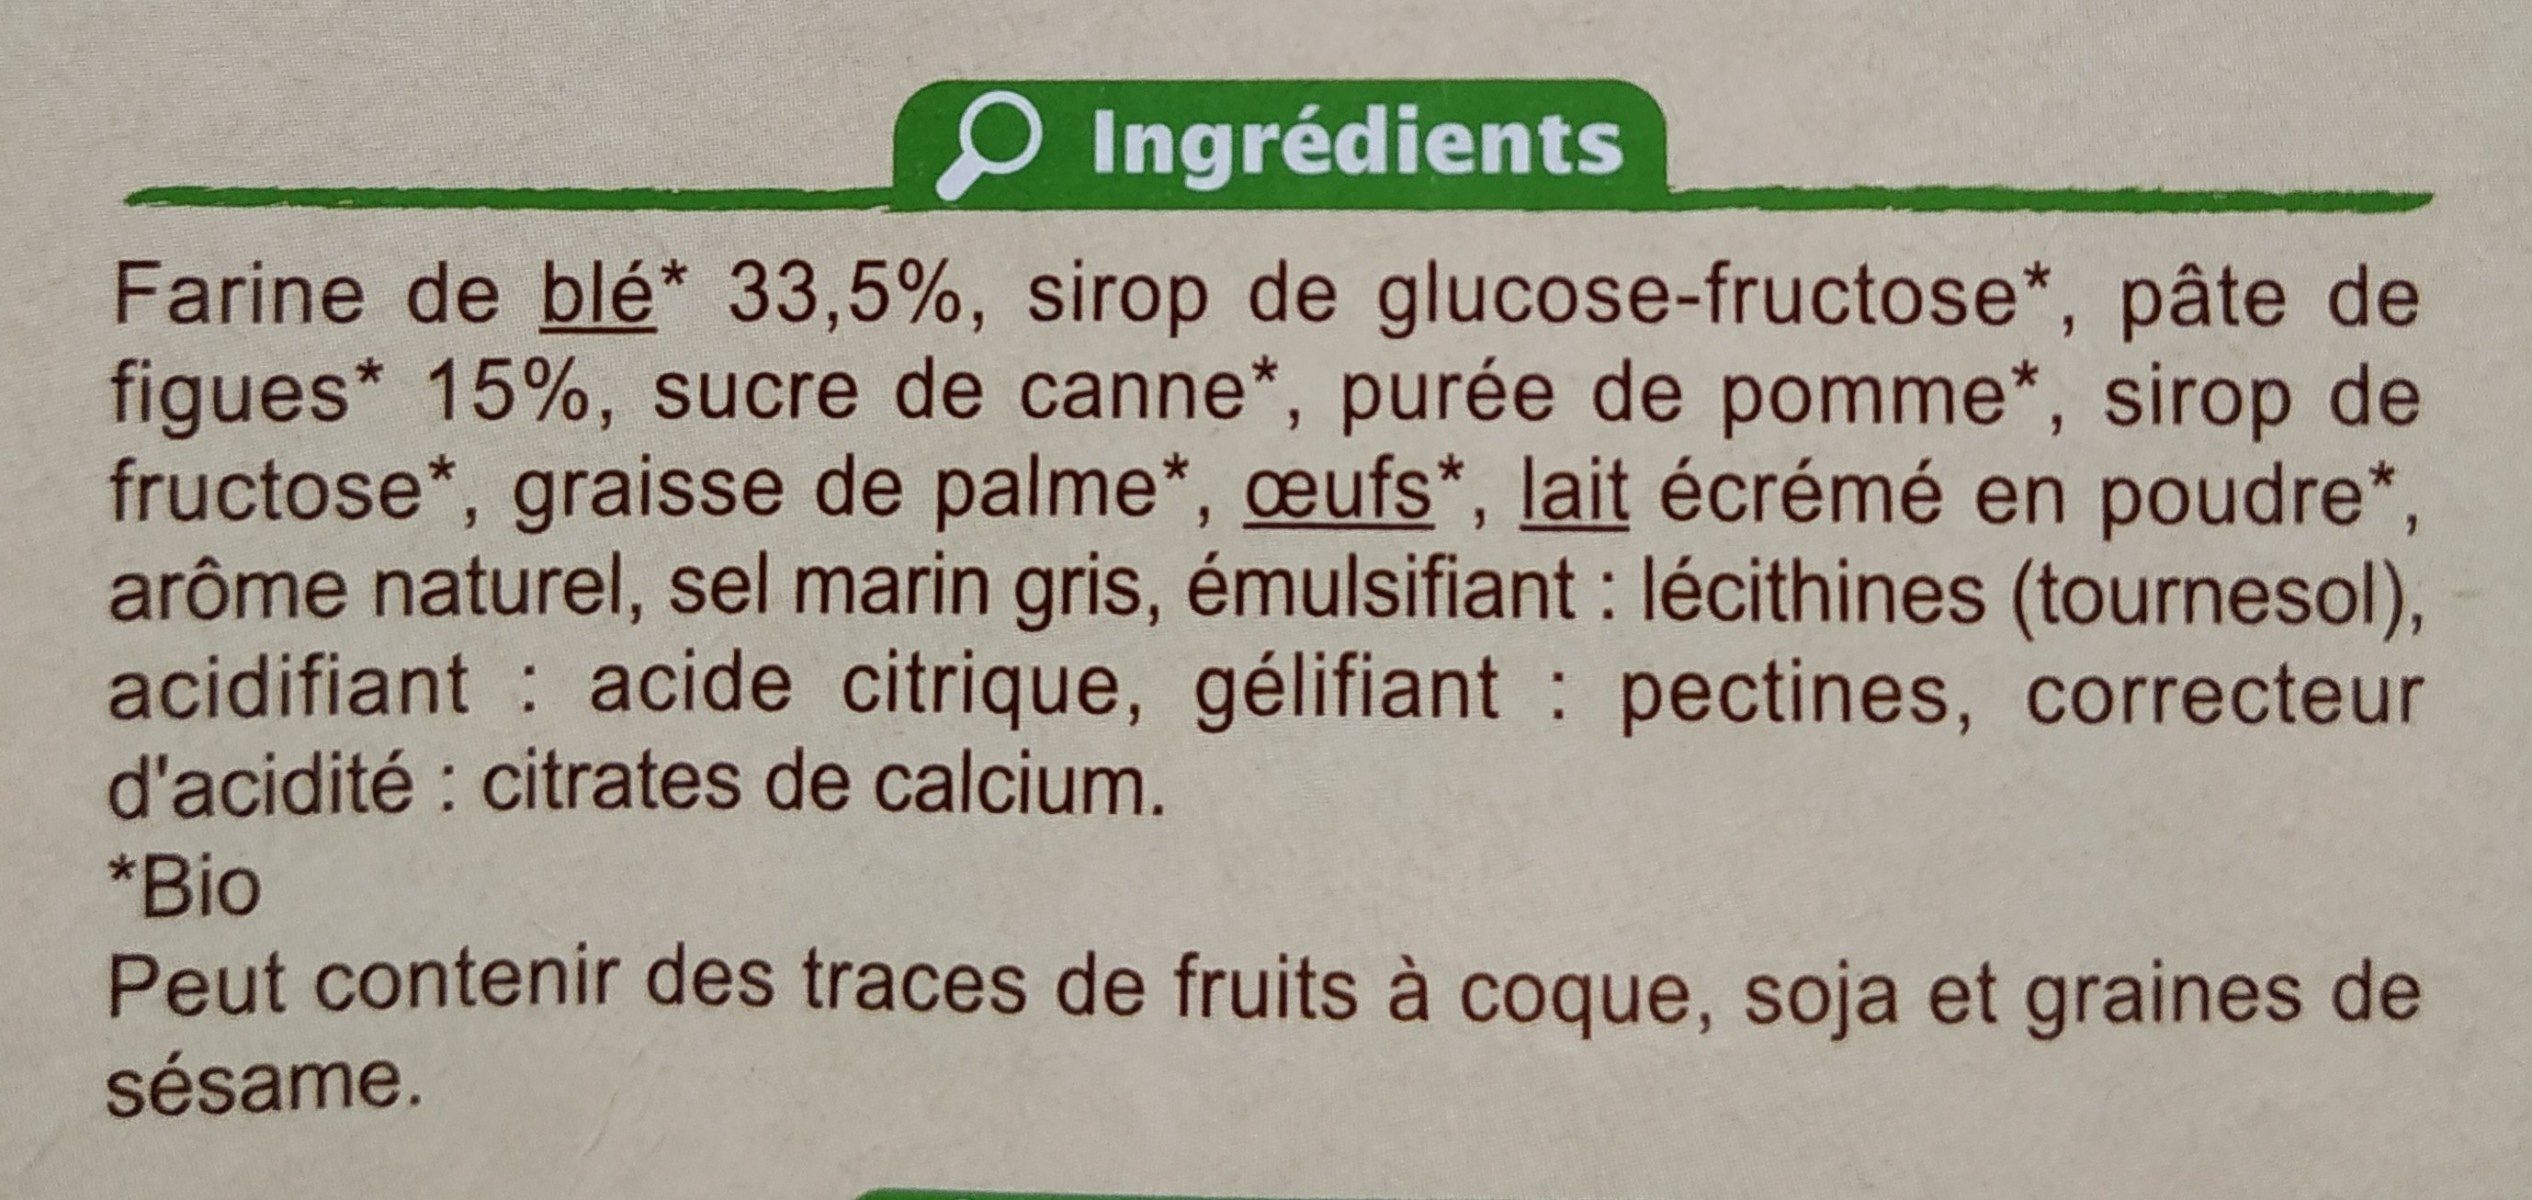 Barre à la figue - Ingredients - fr